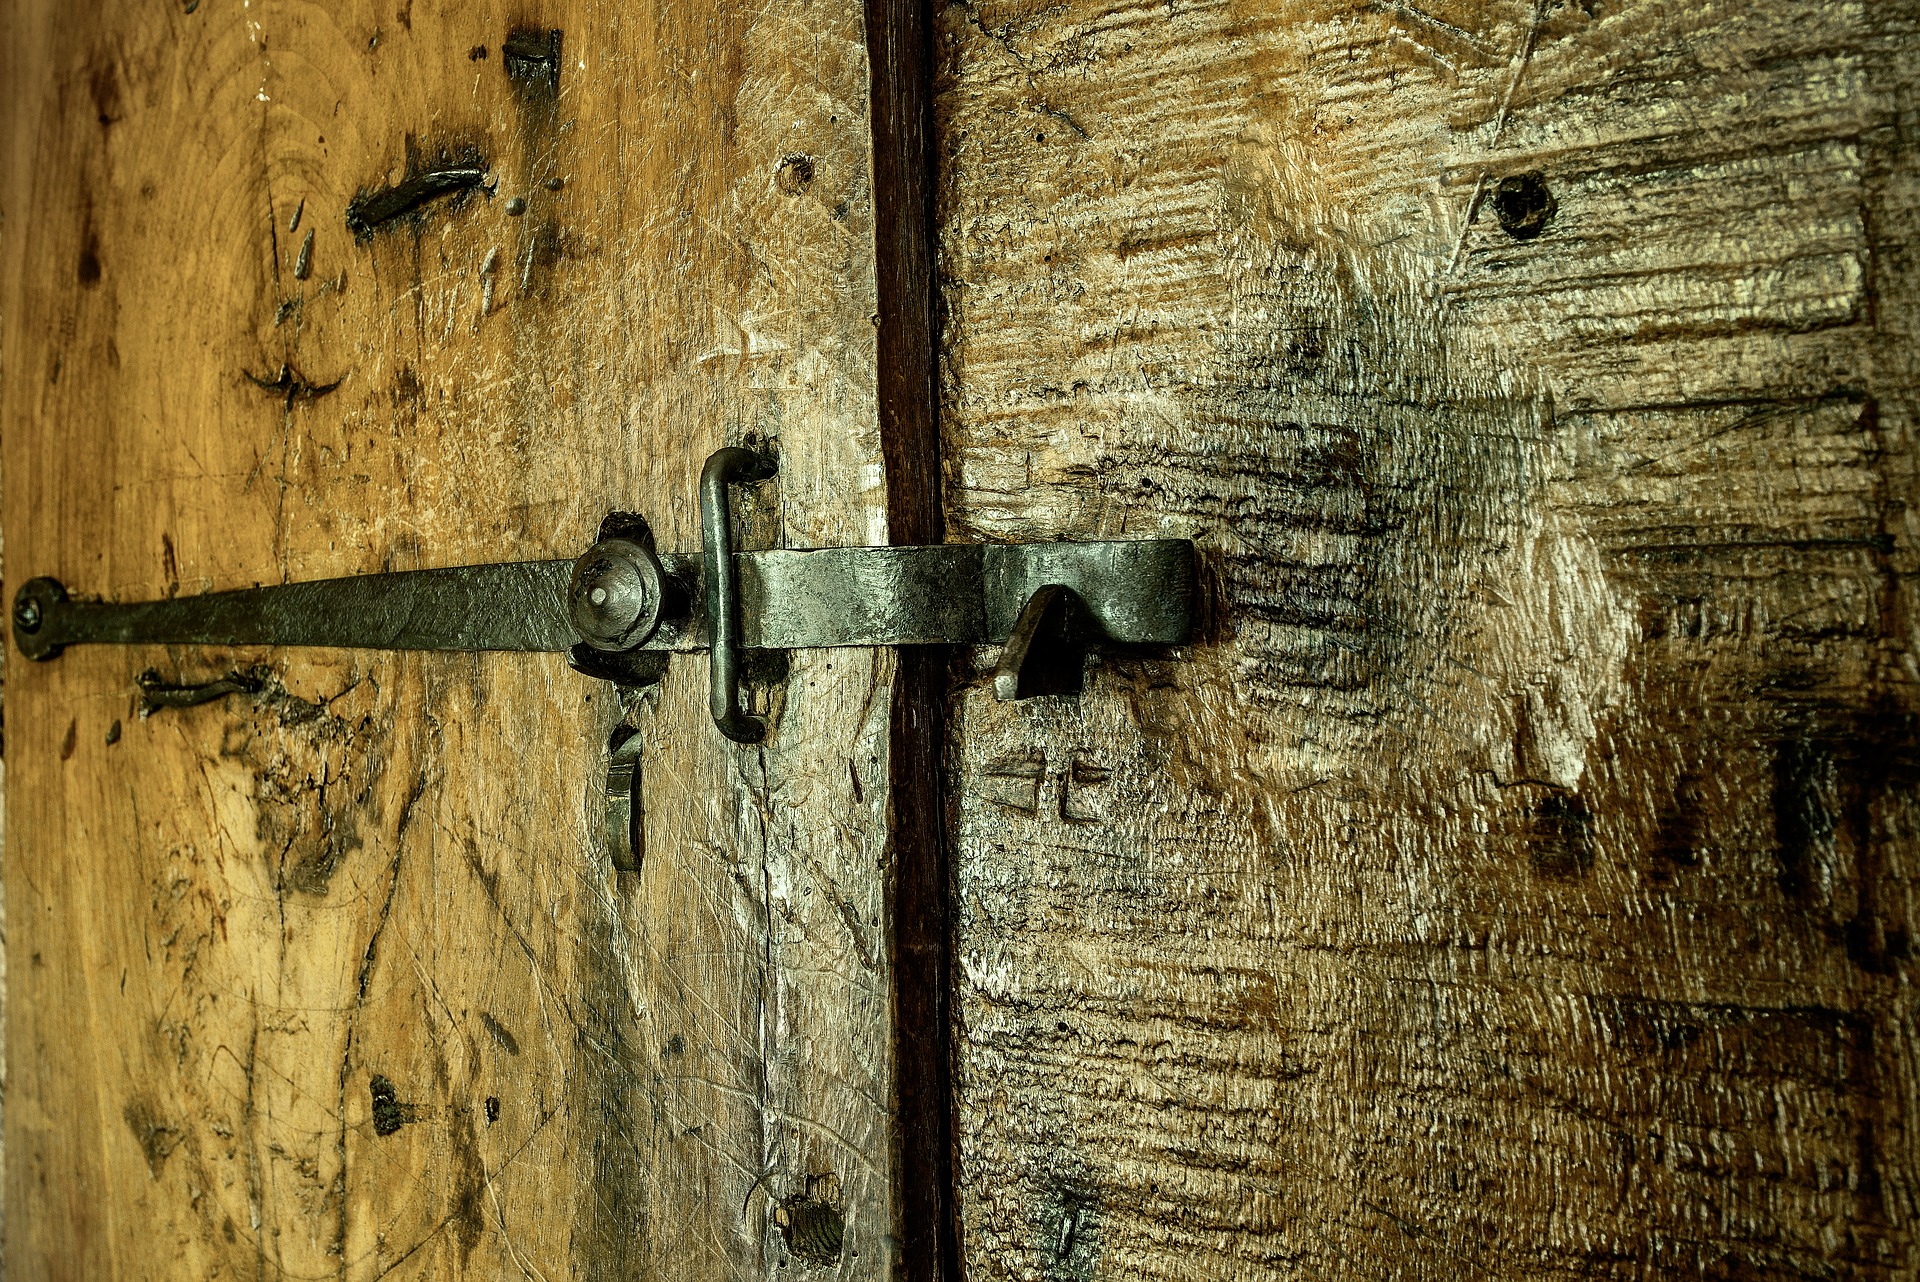 Photograph of heavy wooden door with bolt https://pixabay.com/en/door-wood-lock-iron-cast-iron-1672747/